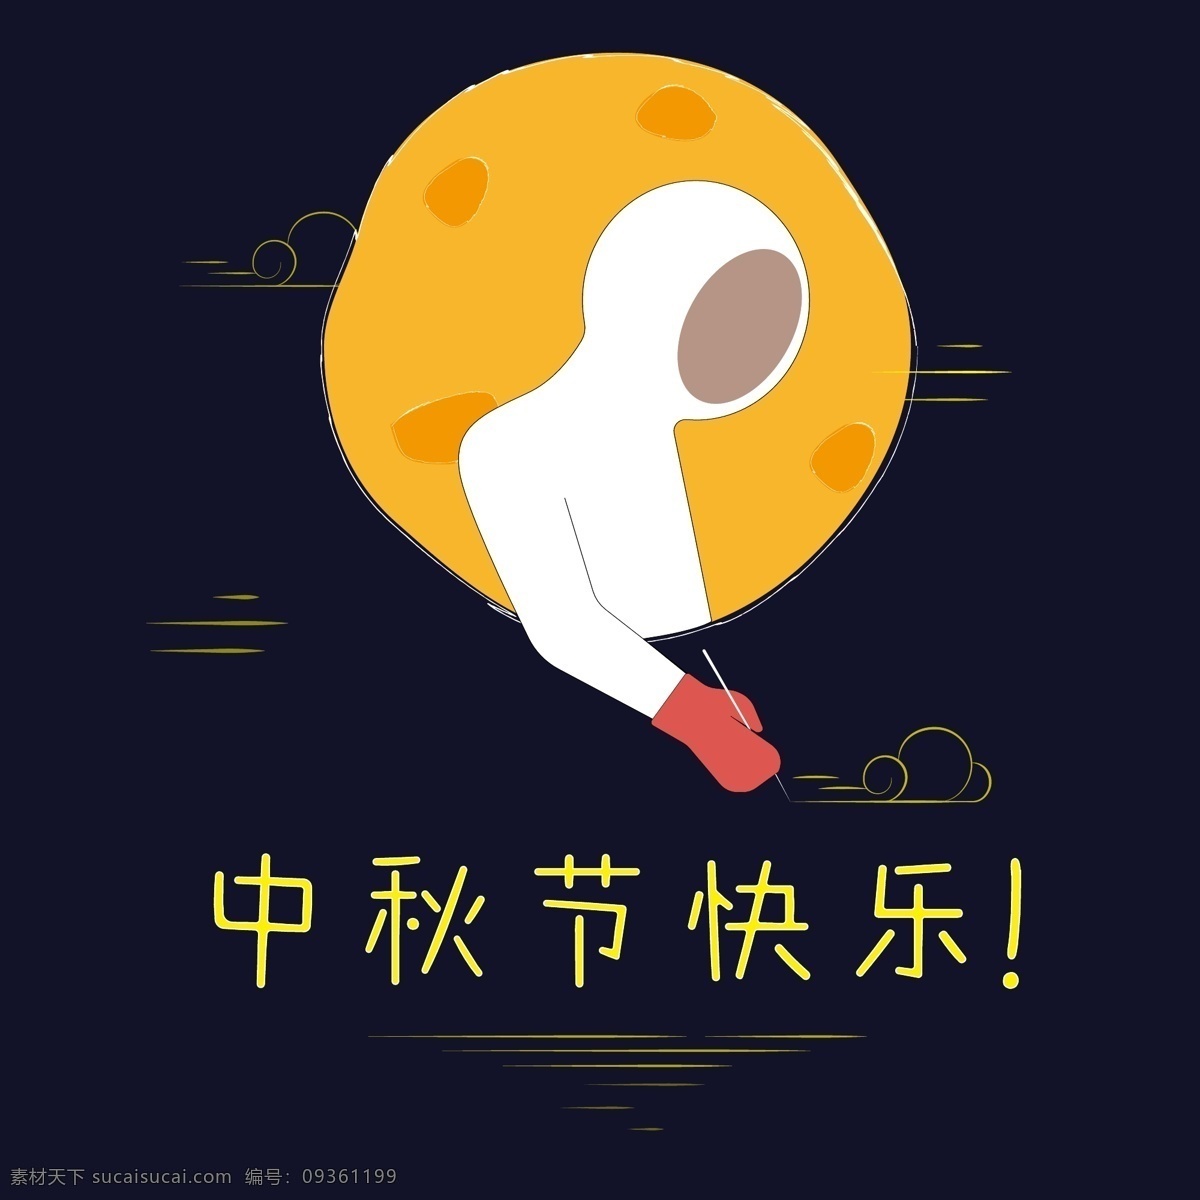 中秋节 节日 元素 快乐 中秋节快乐 标题 海报 节日元素